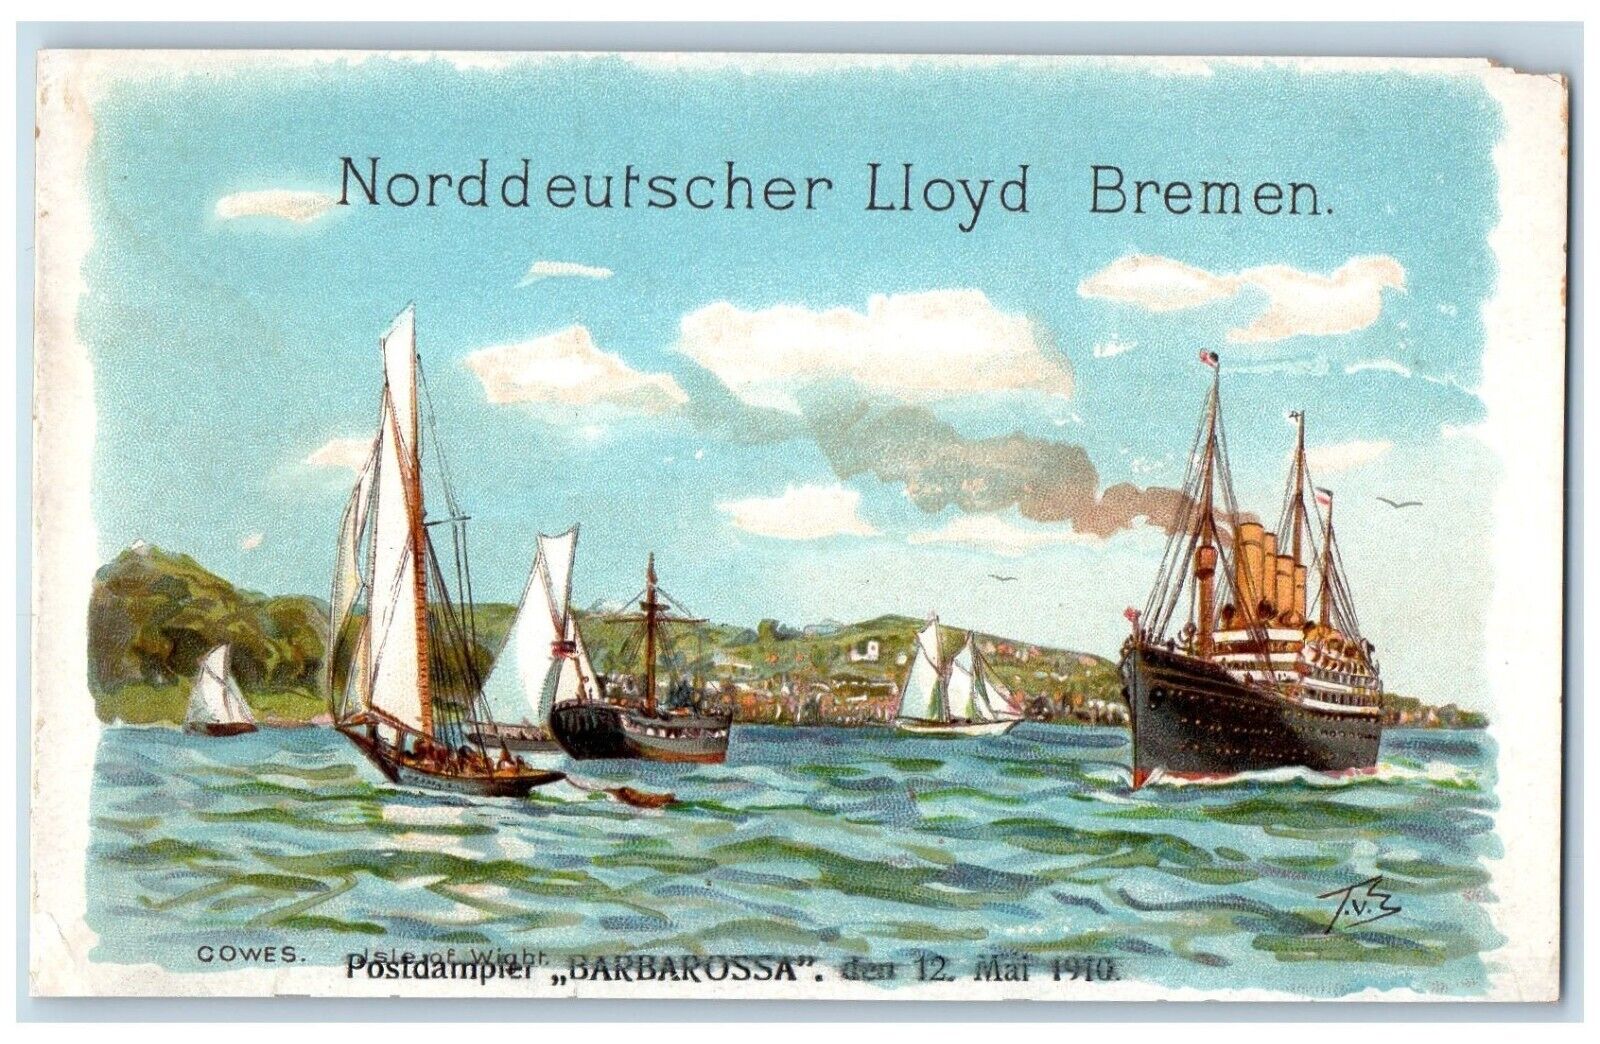 c1905 Norddeutscher Lloyd Bremen Postdampfer Barbarossa Steamer Boat Postcard